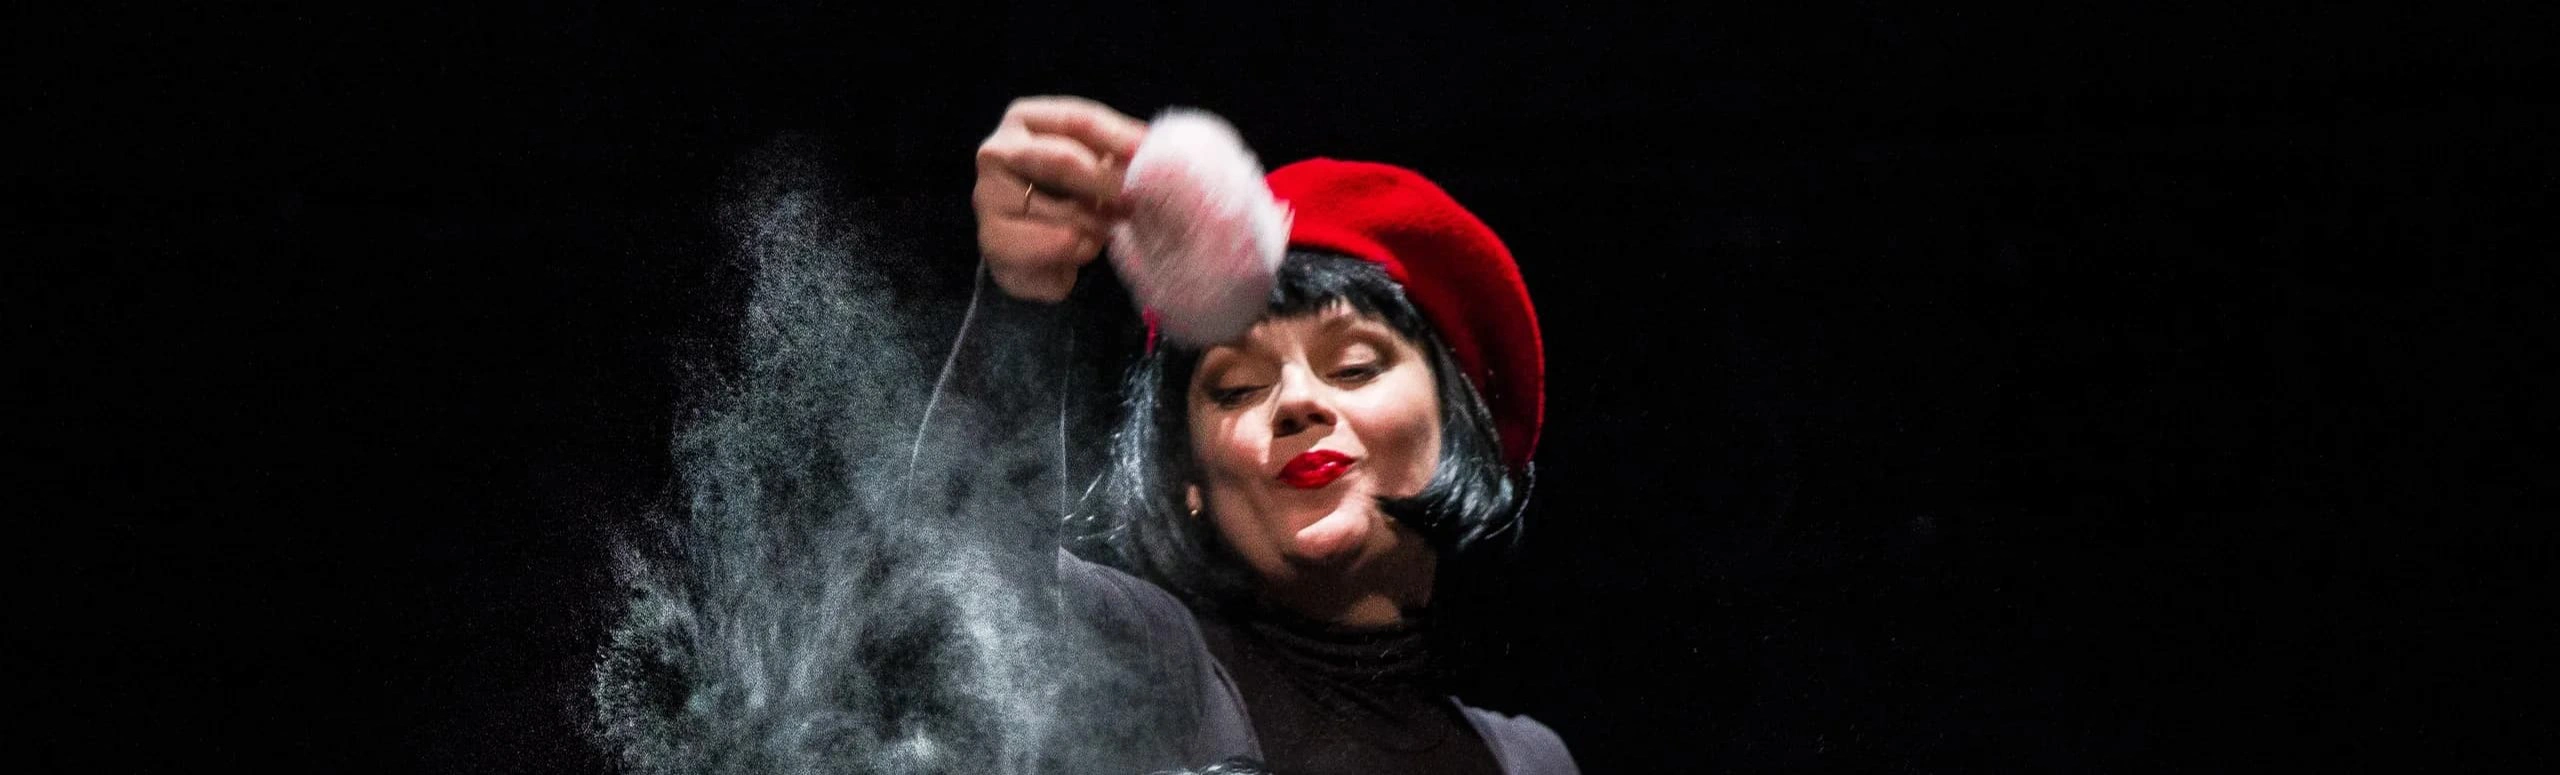 Спектакль «Красная шапка» в Театре на Таганке - яркое и захватывающее театральное событие